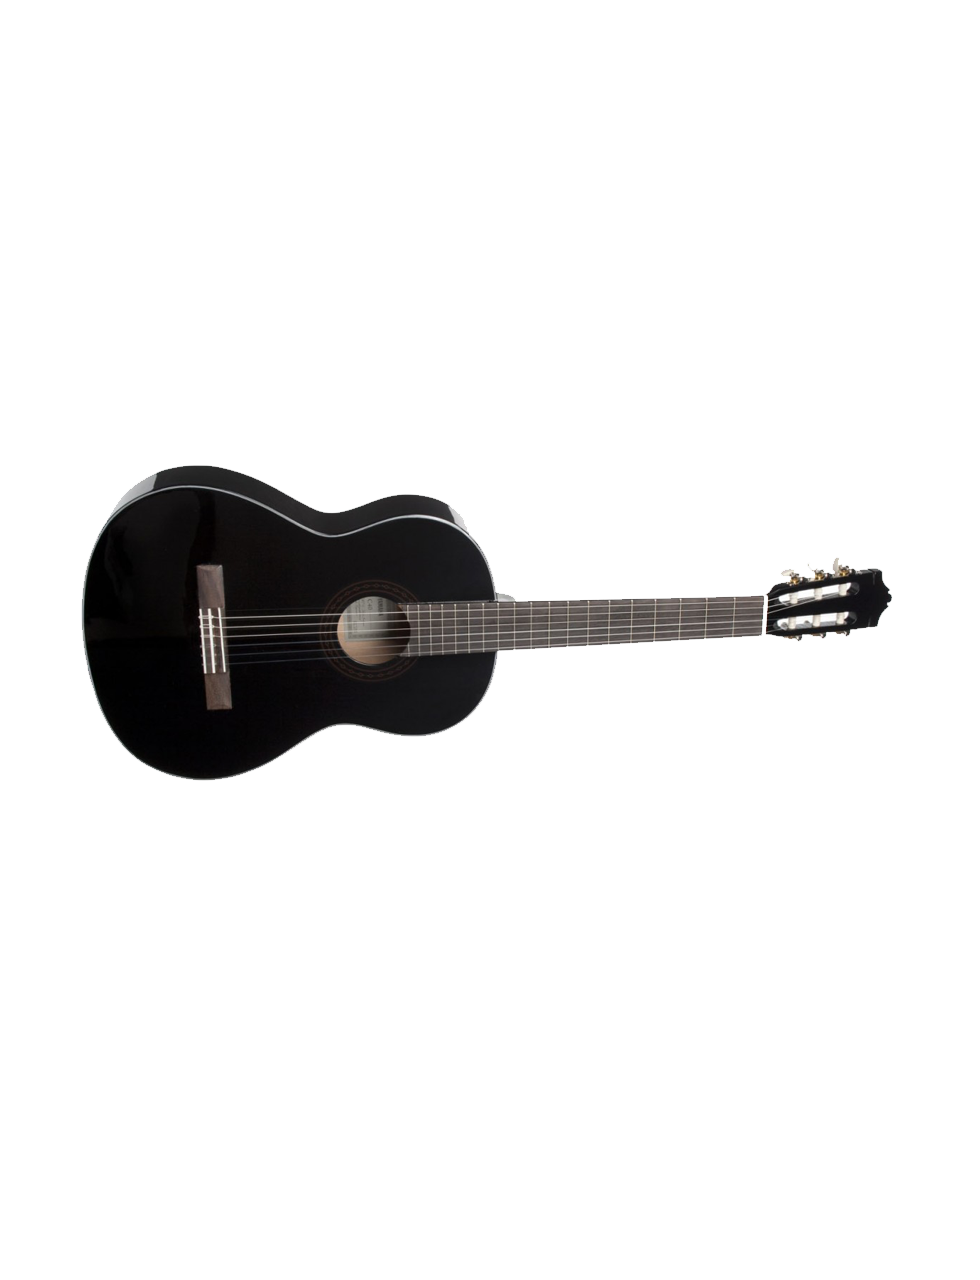 Yamaha-Guitar-Classic-C40BL-3.png